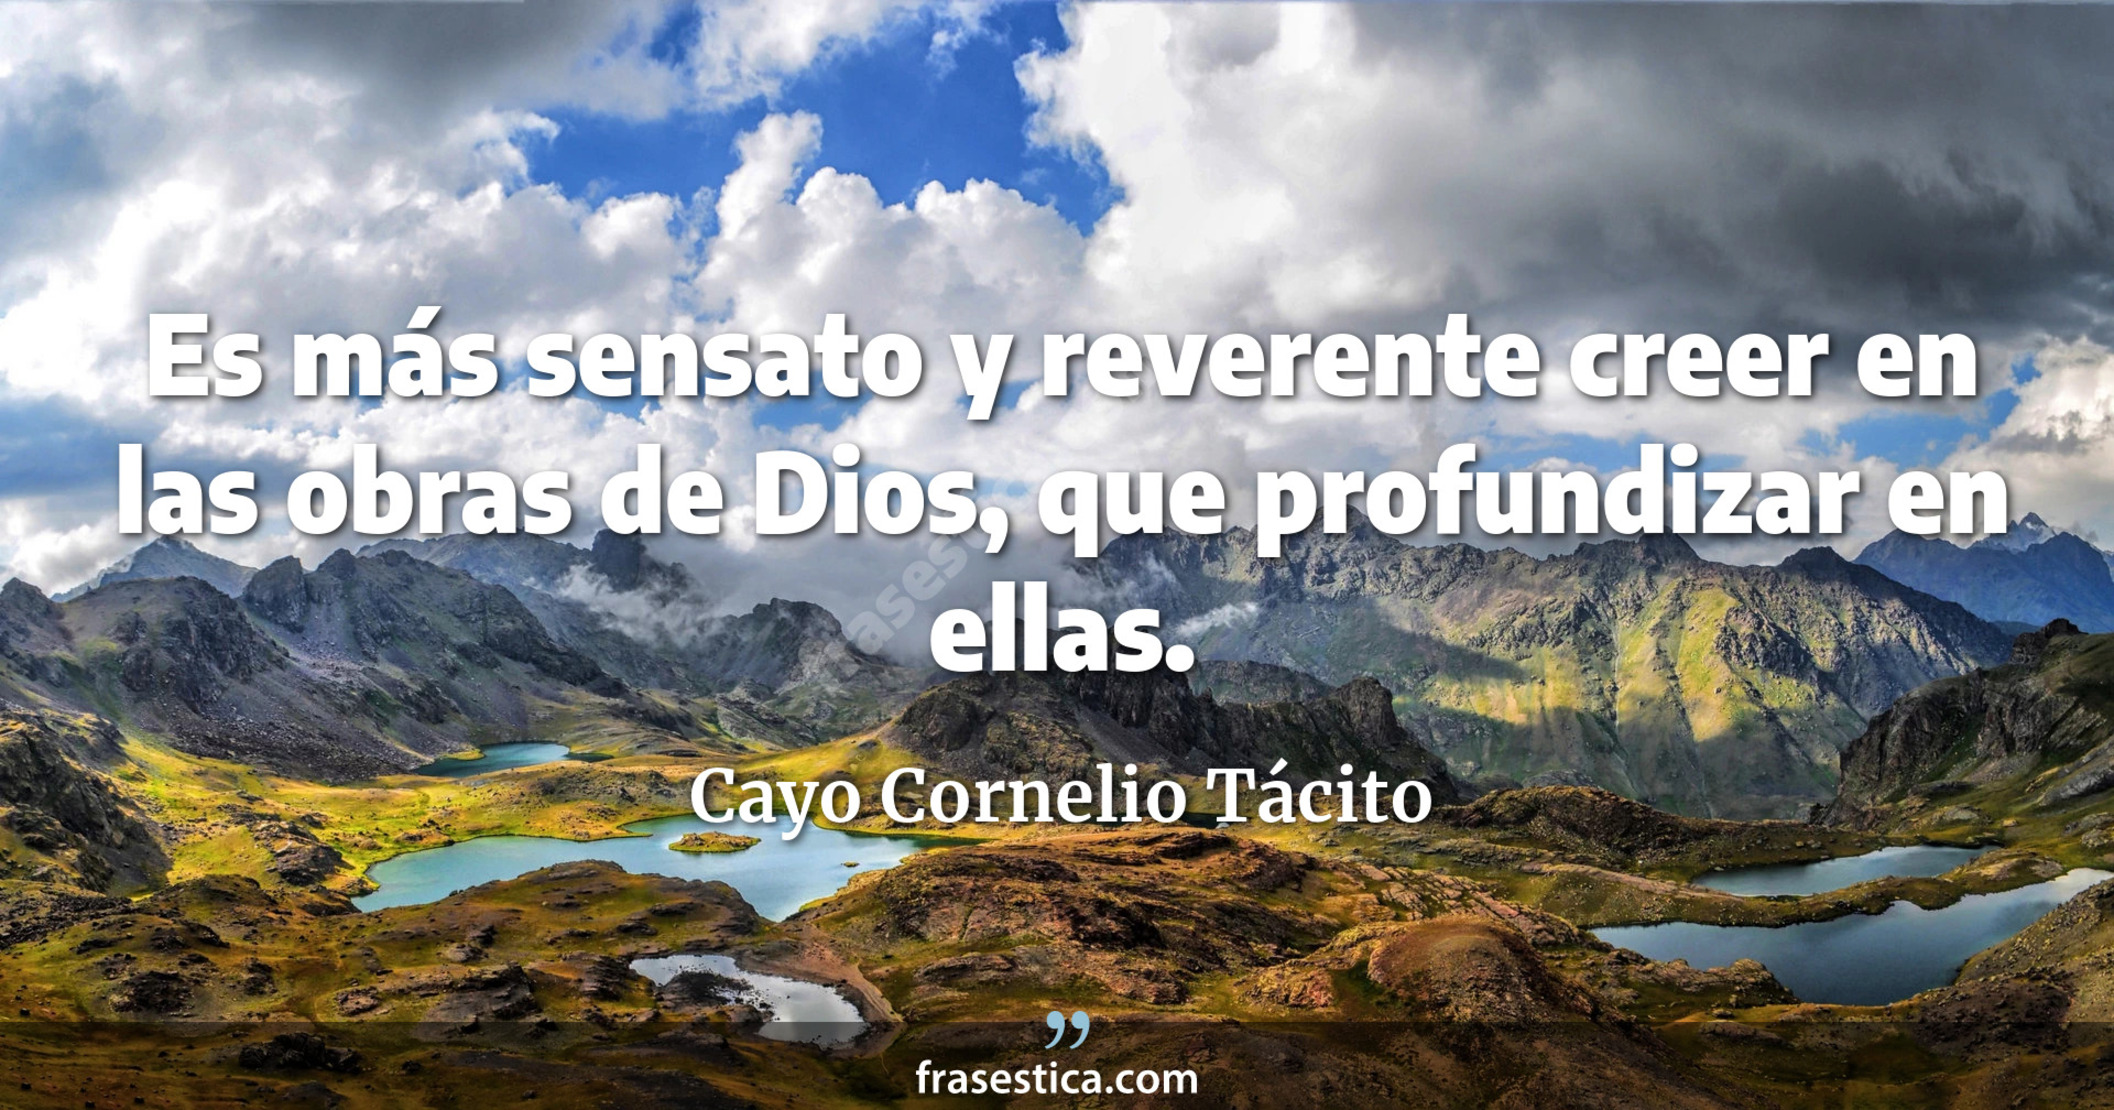 Es más sensato y reverente creer en las obras de Dios, que profundizar en ellas. - Cayo Cornelio Tácito